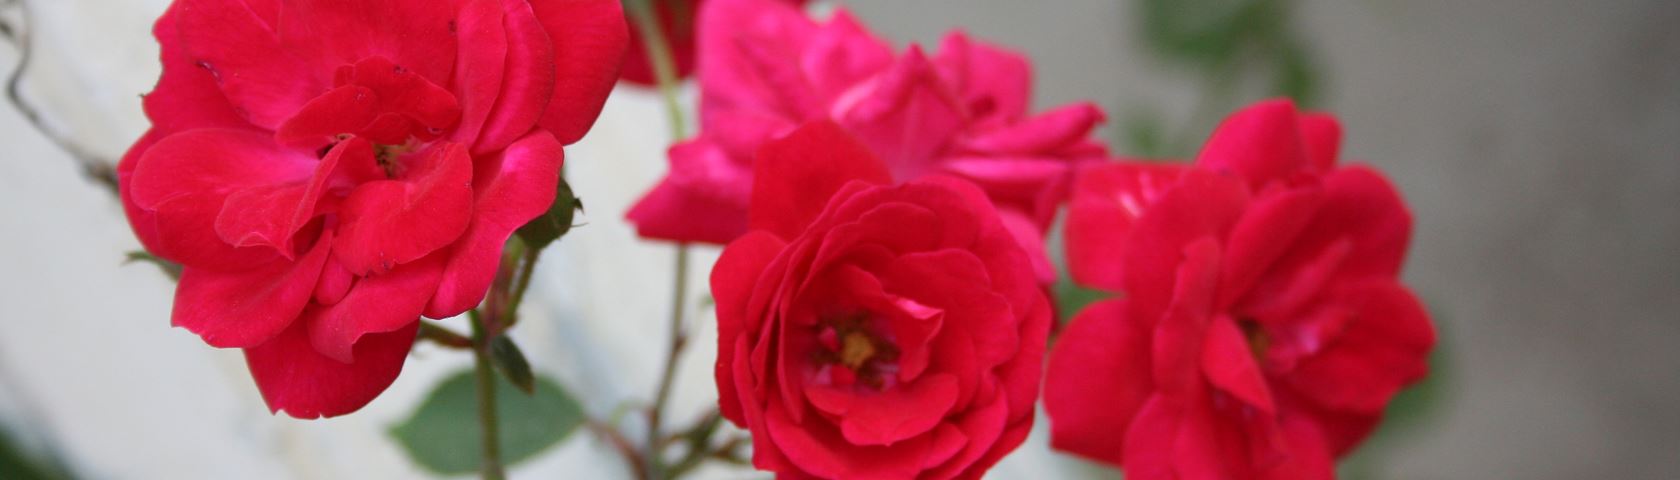 Roses In Bloom